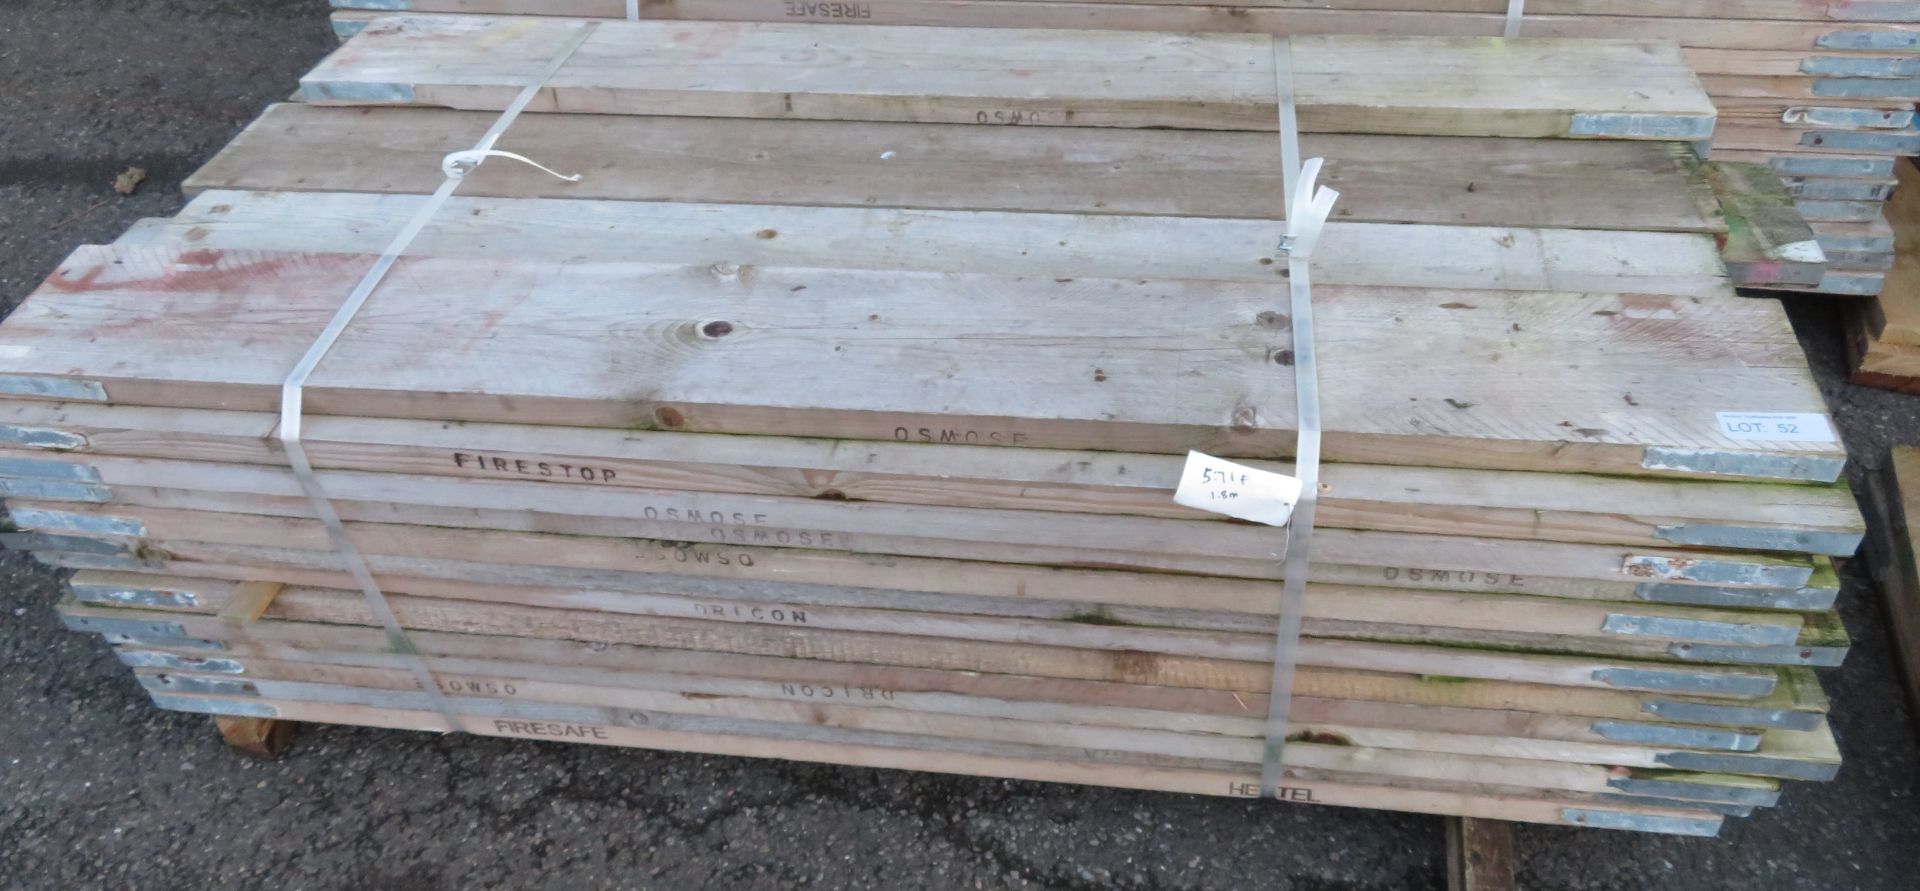 50x 6ft Wooden Scaffolding Board.